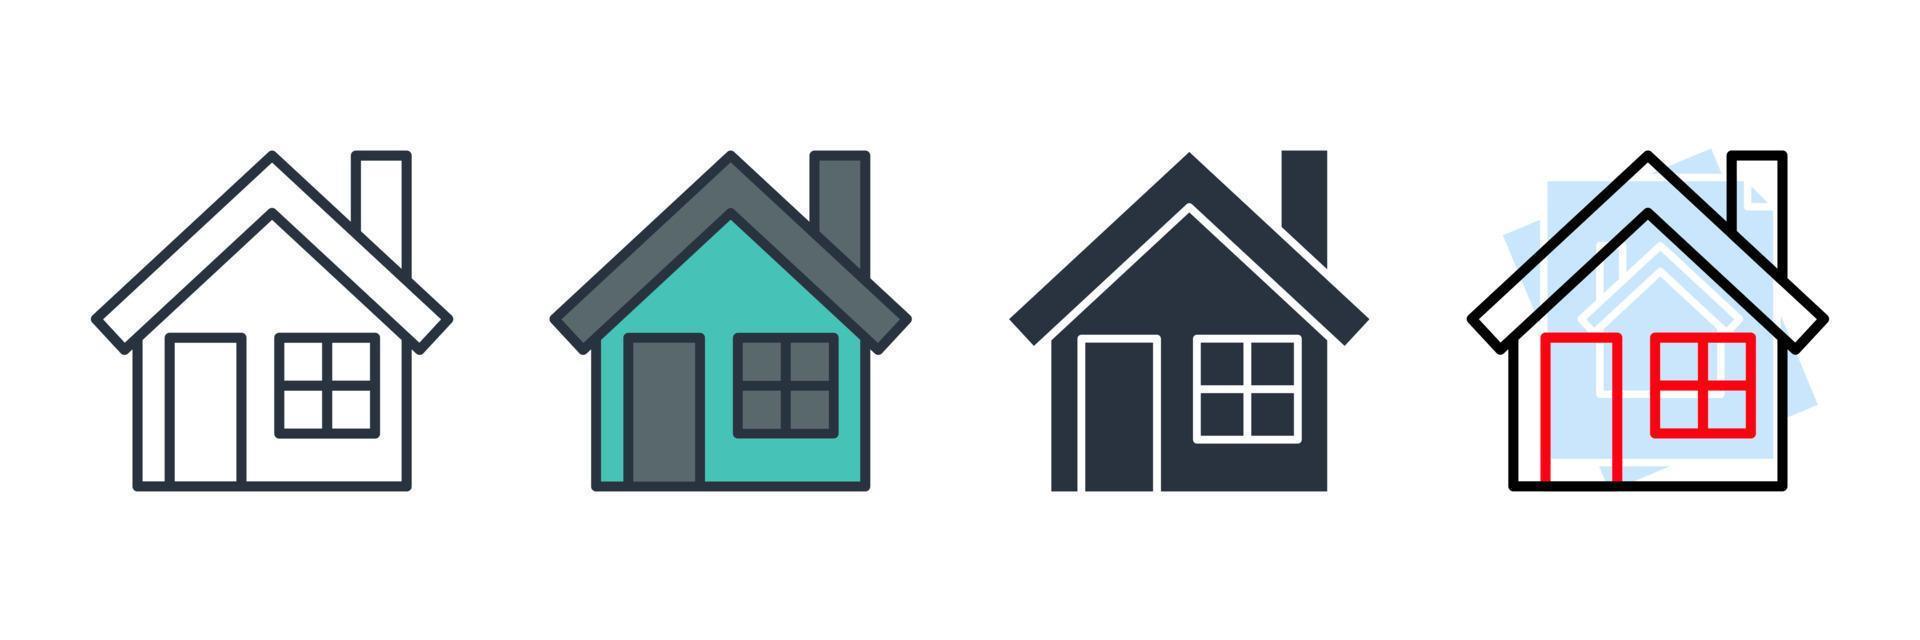 illustrazione vettoriale del logo dell'icona della casa. modello di simbolo domestico per la raccolta di grafica e web design